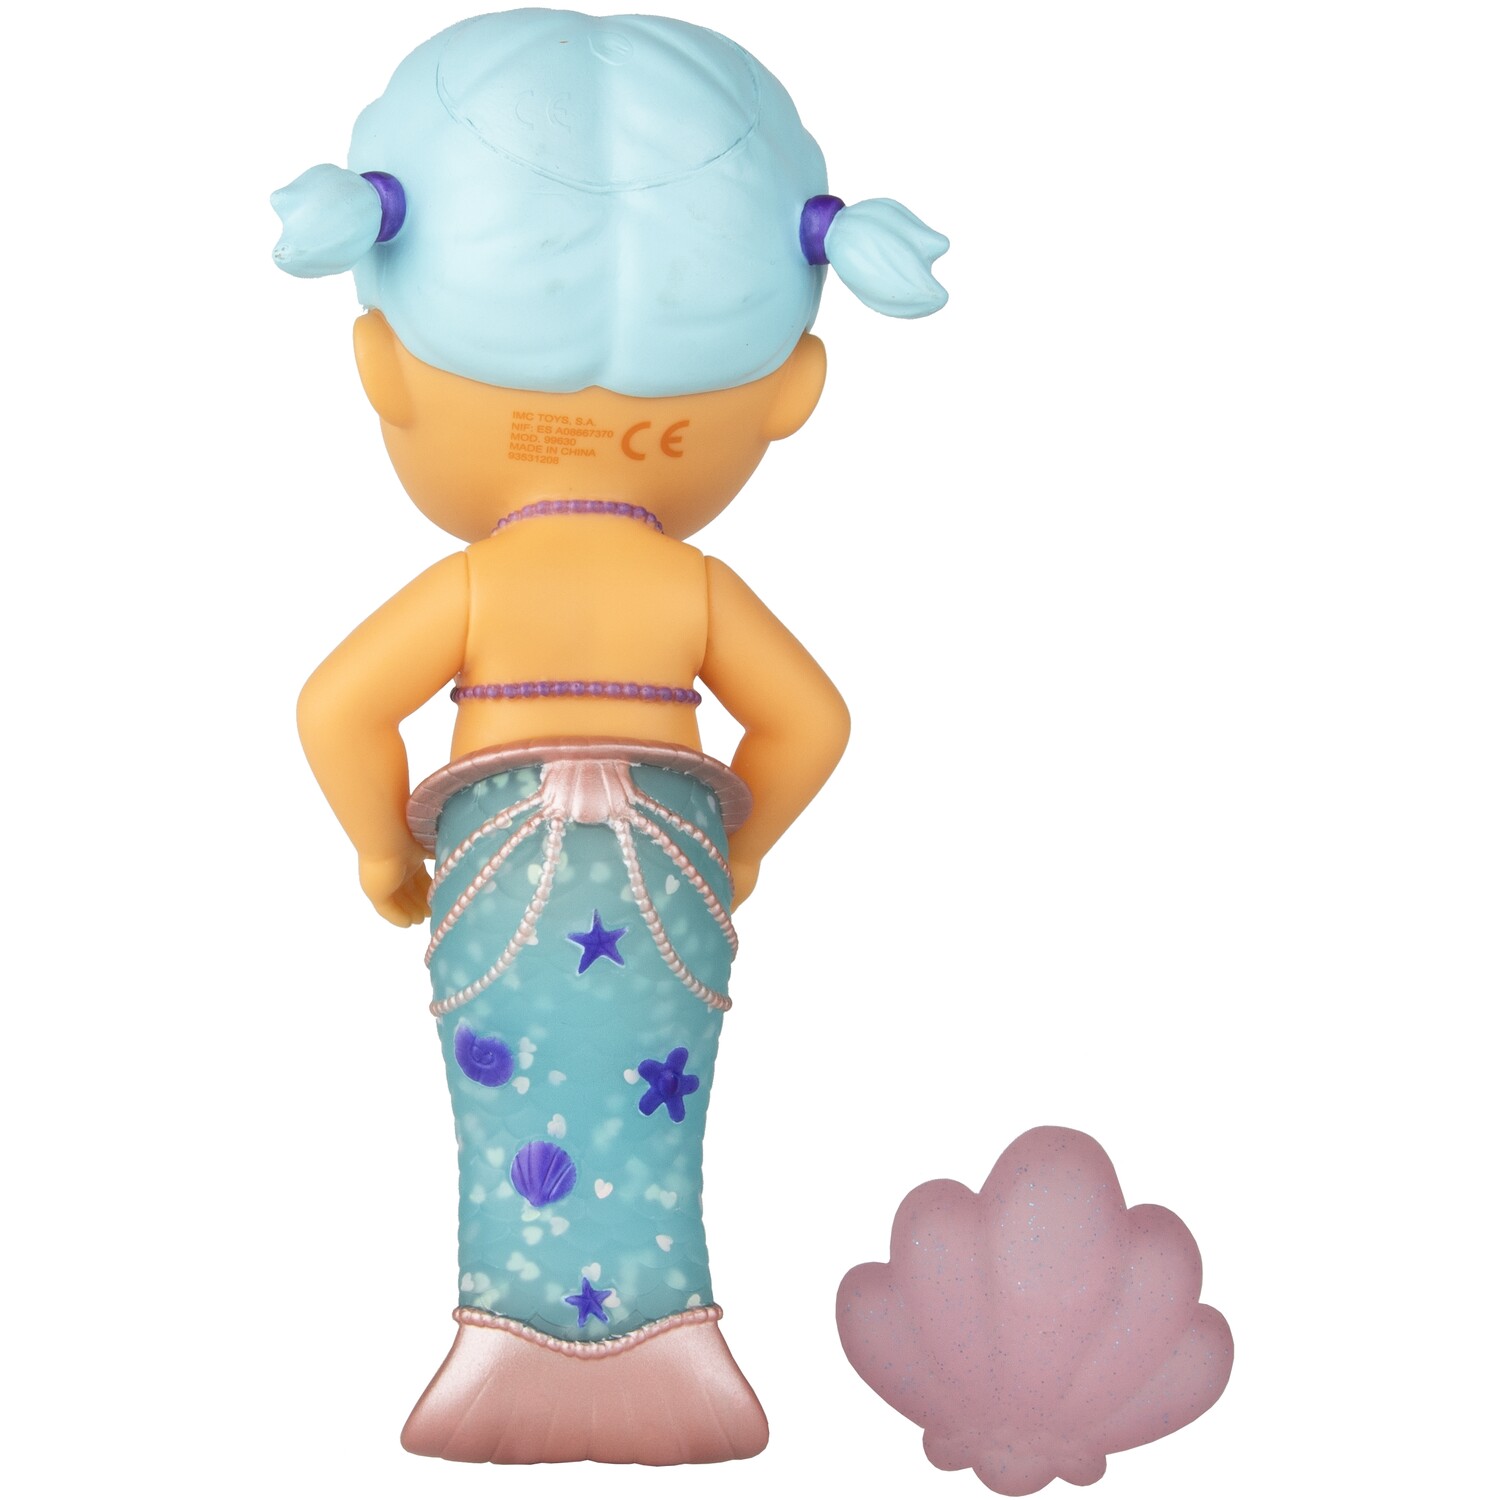 Single Bloopies Mermaids Series 2 Bath Toy in Assorted styles Image 5